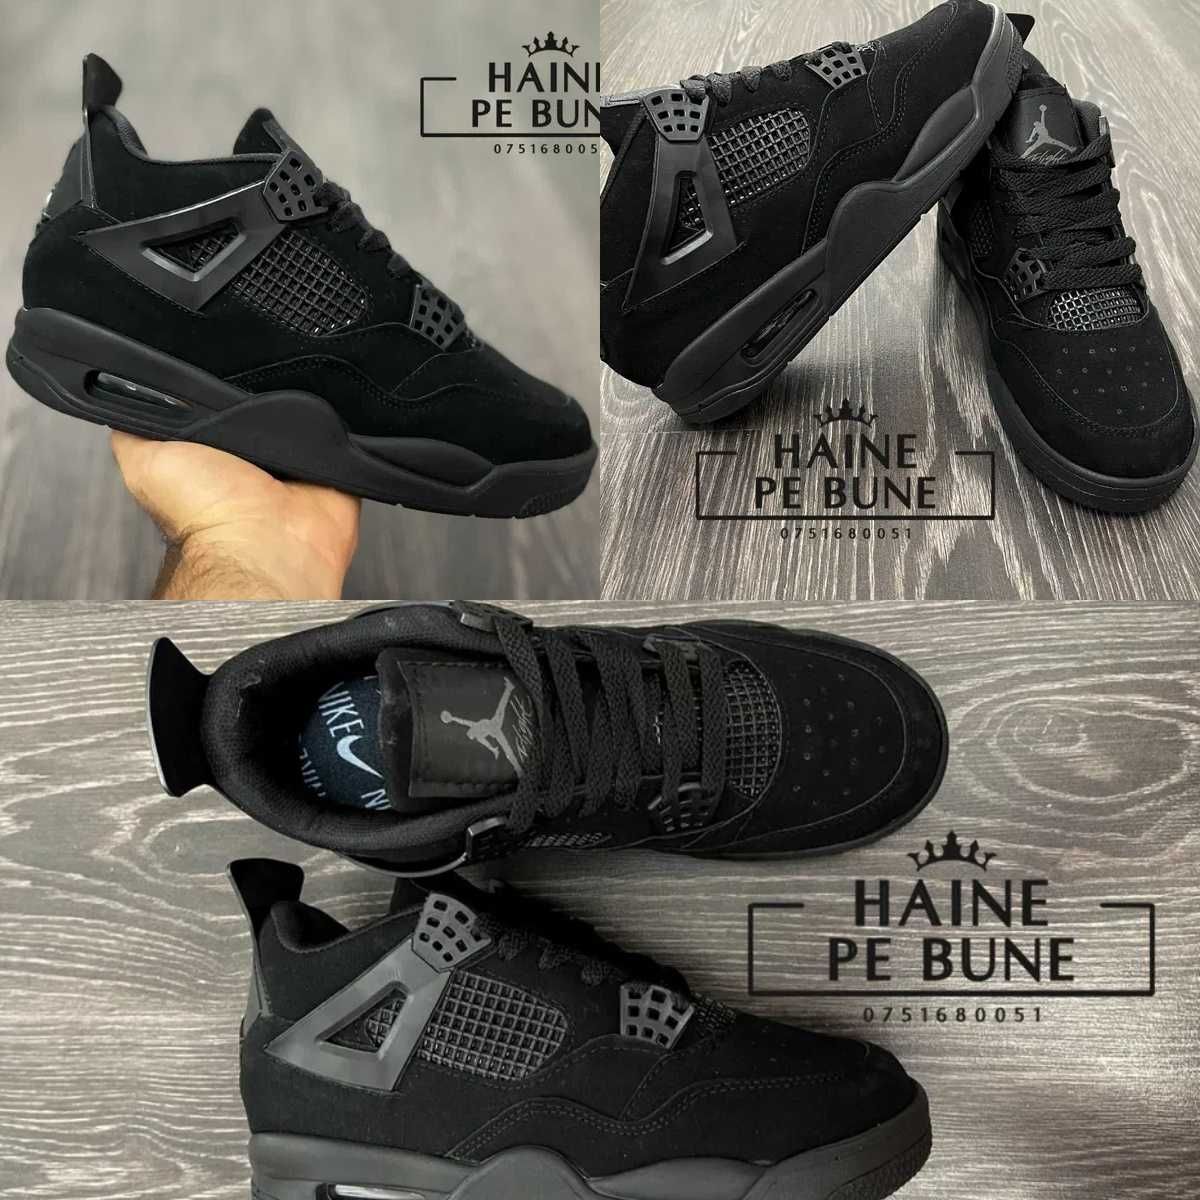 Nike Air Jordan 4 Retro "Black Cat" / Adidasi Fete / Baieti